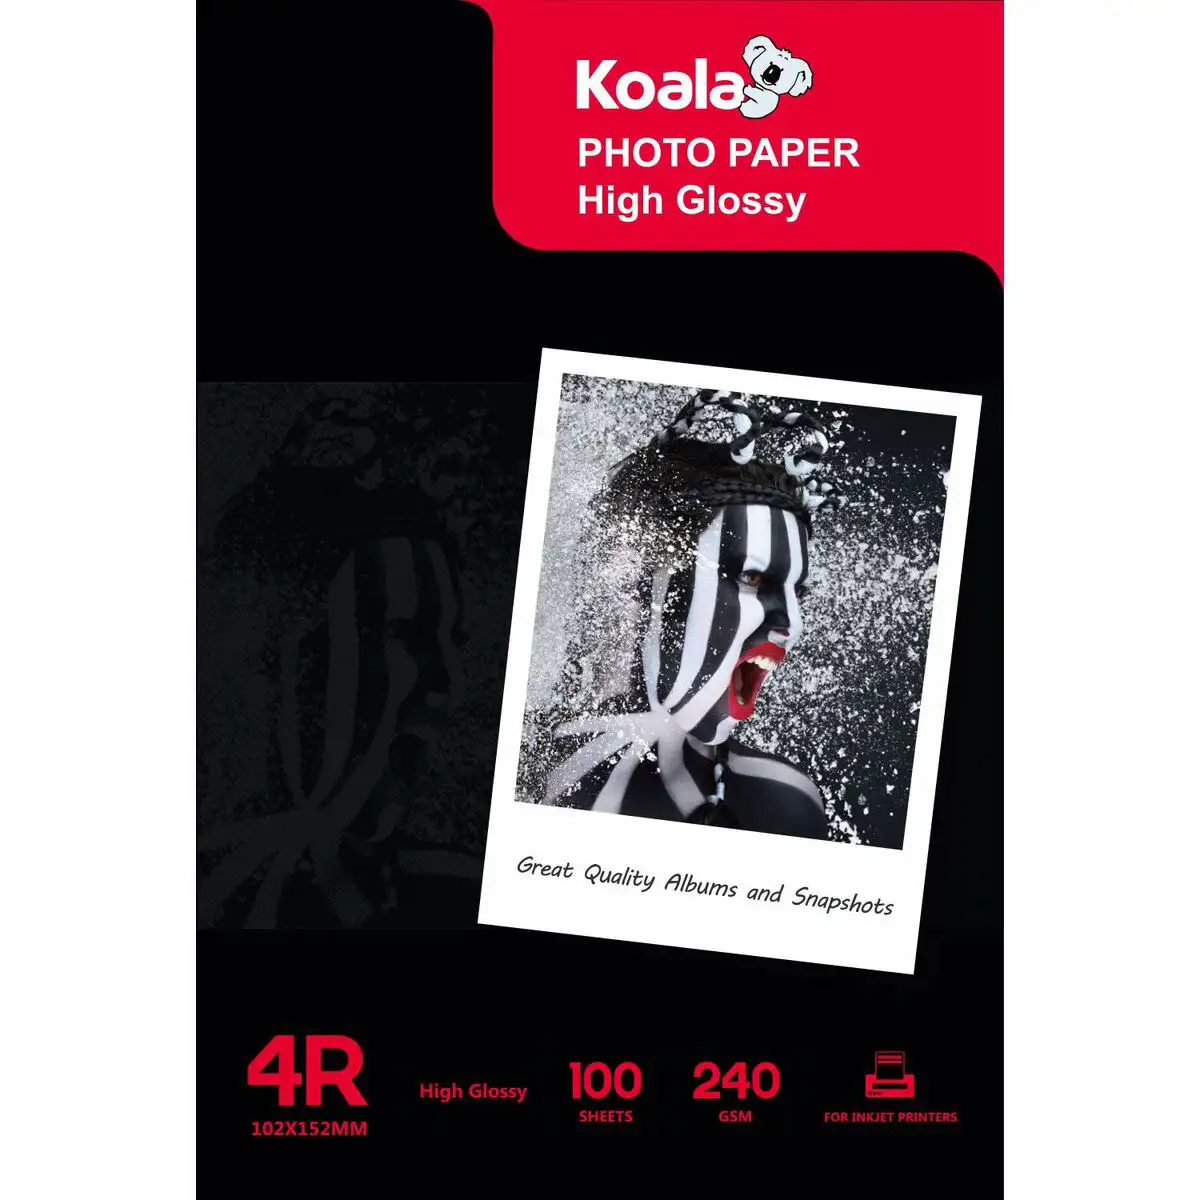 Papier photo glace koala g240 4r reconditionne a _2510. DIAYTAR SENEGAL - Votre Boutique en Ligne, Votre Choix Illimité. Parcourez nos rayons et découvrez des produits qui vous inspirent, de la mode à la maison et bien plus.